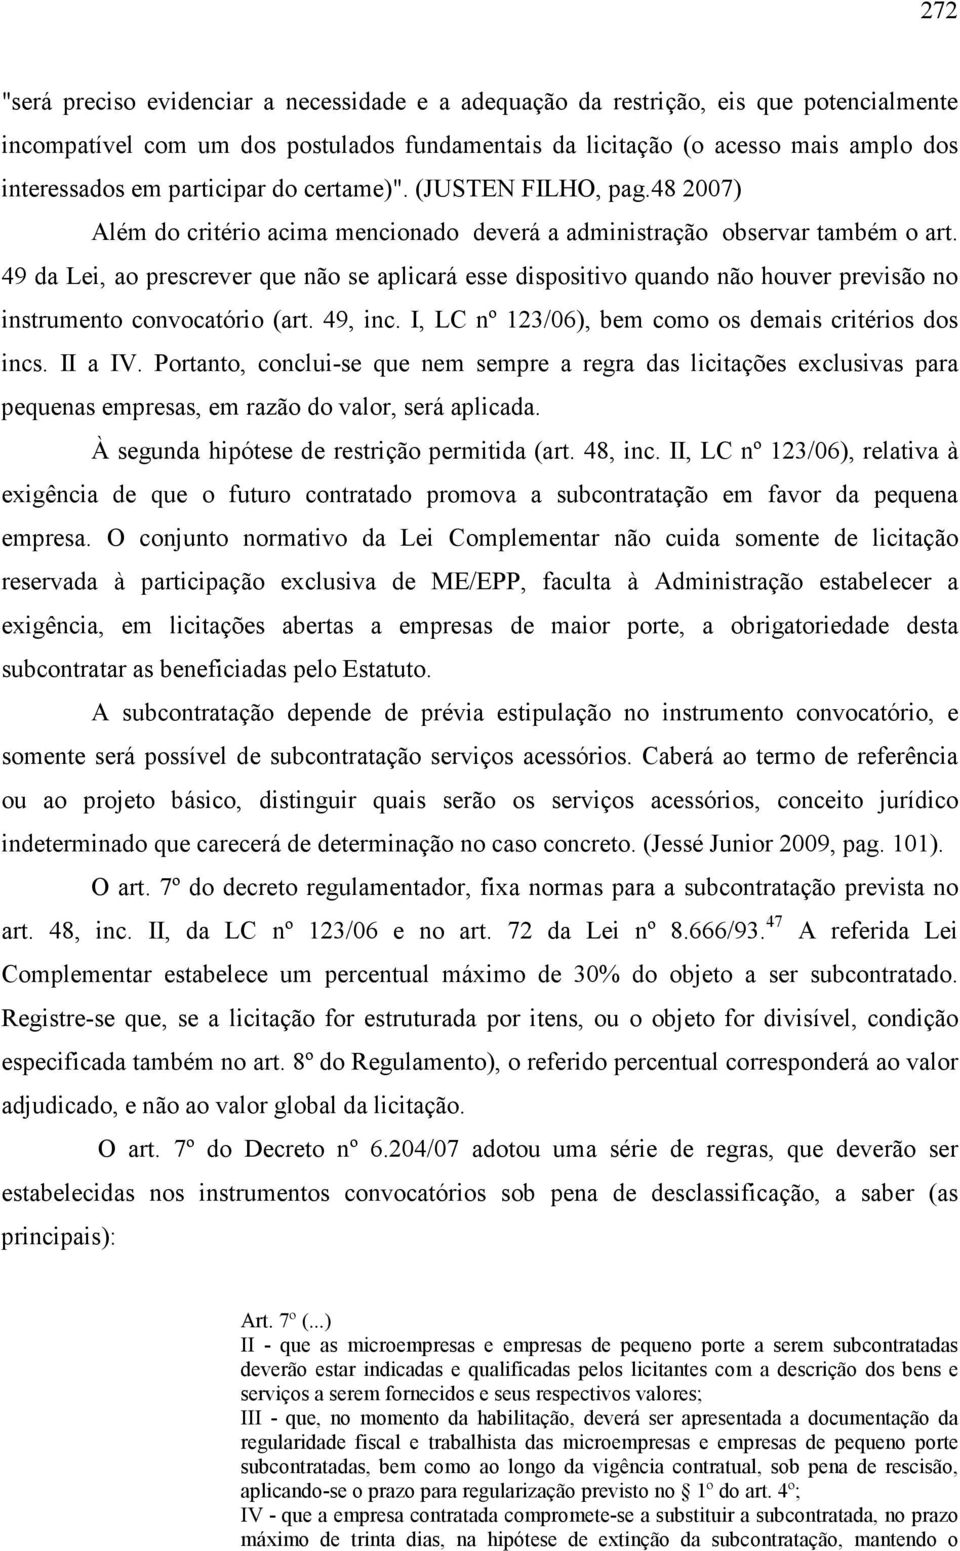 49 da Lei, ao prescrever que não se aplicará esse dispositivo quando não houver previsão no instrumento convocatório (art. 49, inc. I, LC nº 123/06), bem como os demais critérios dos incs. II a IV.